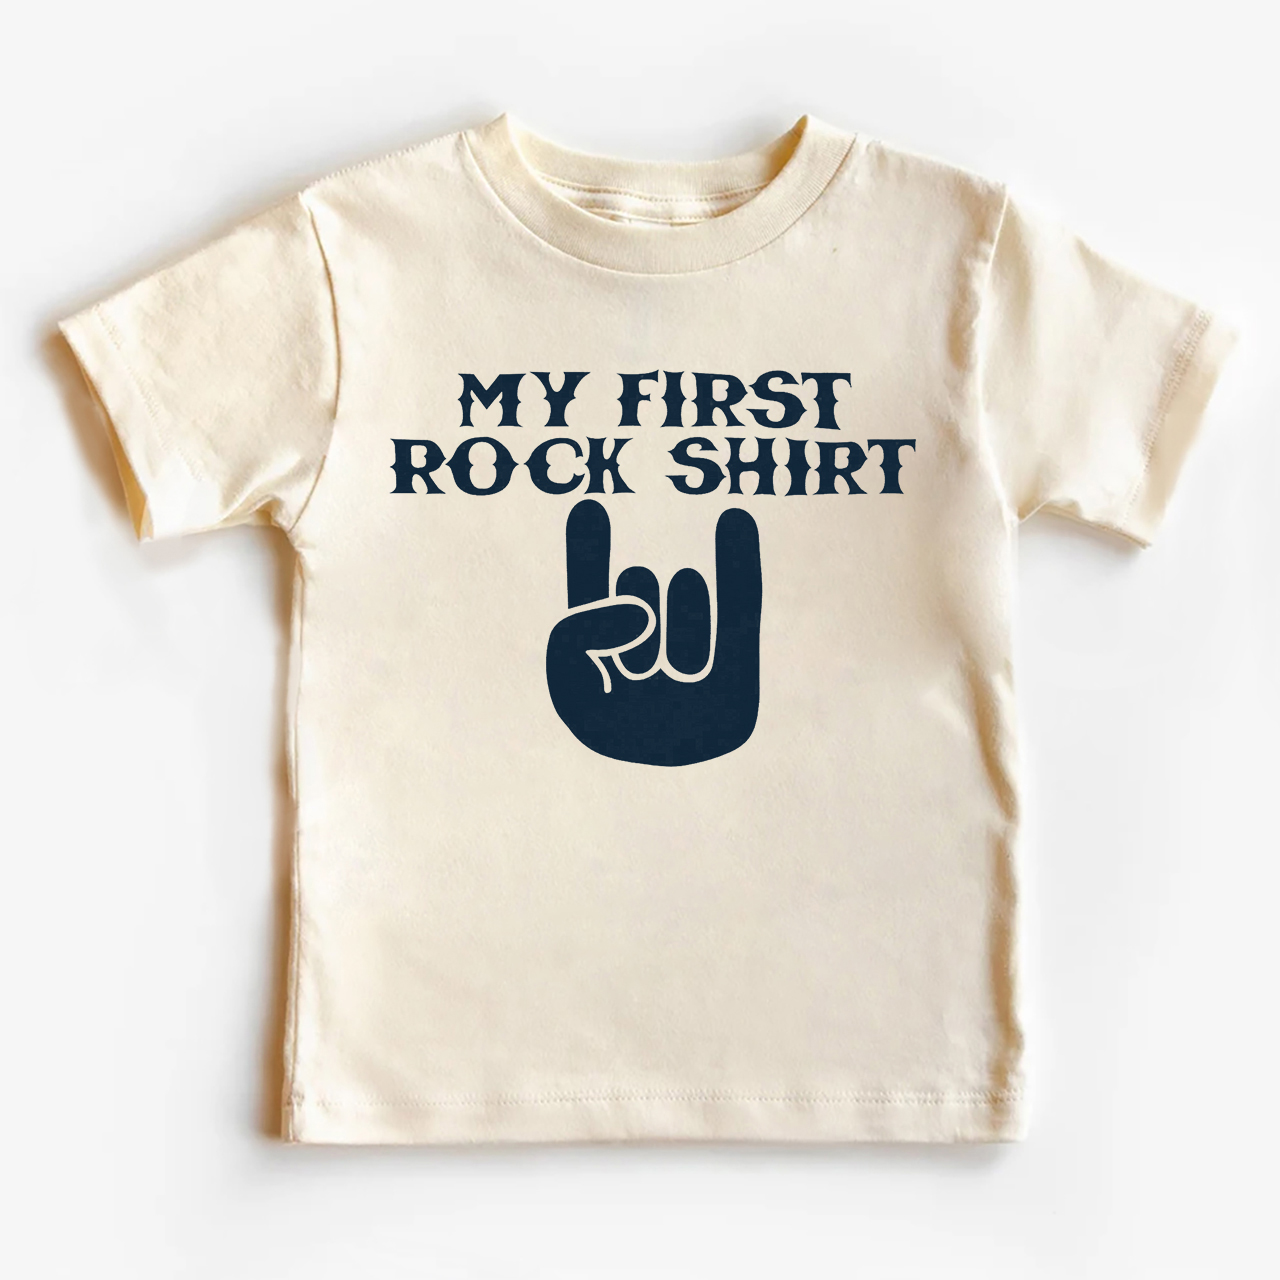 My First Rock Shirt Kids Shirt